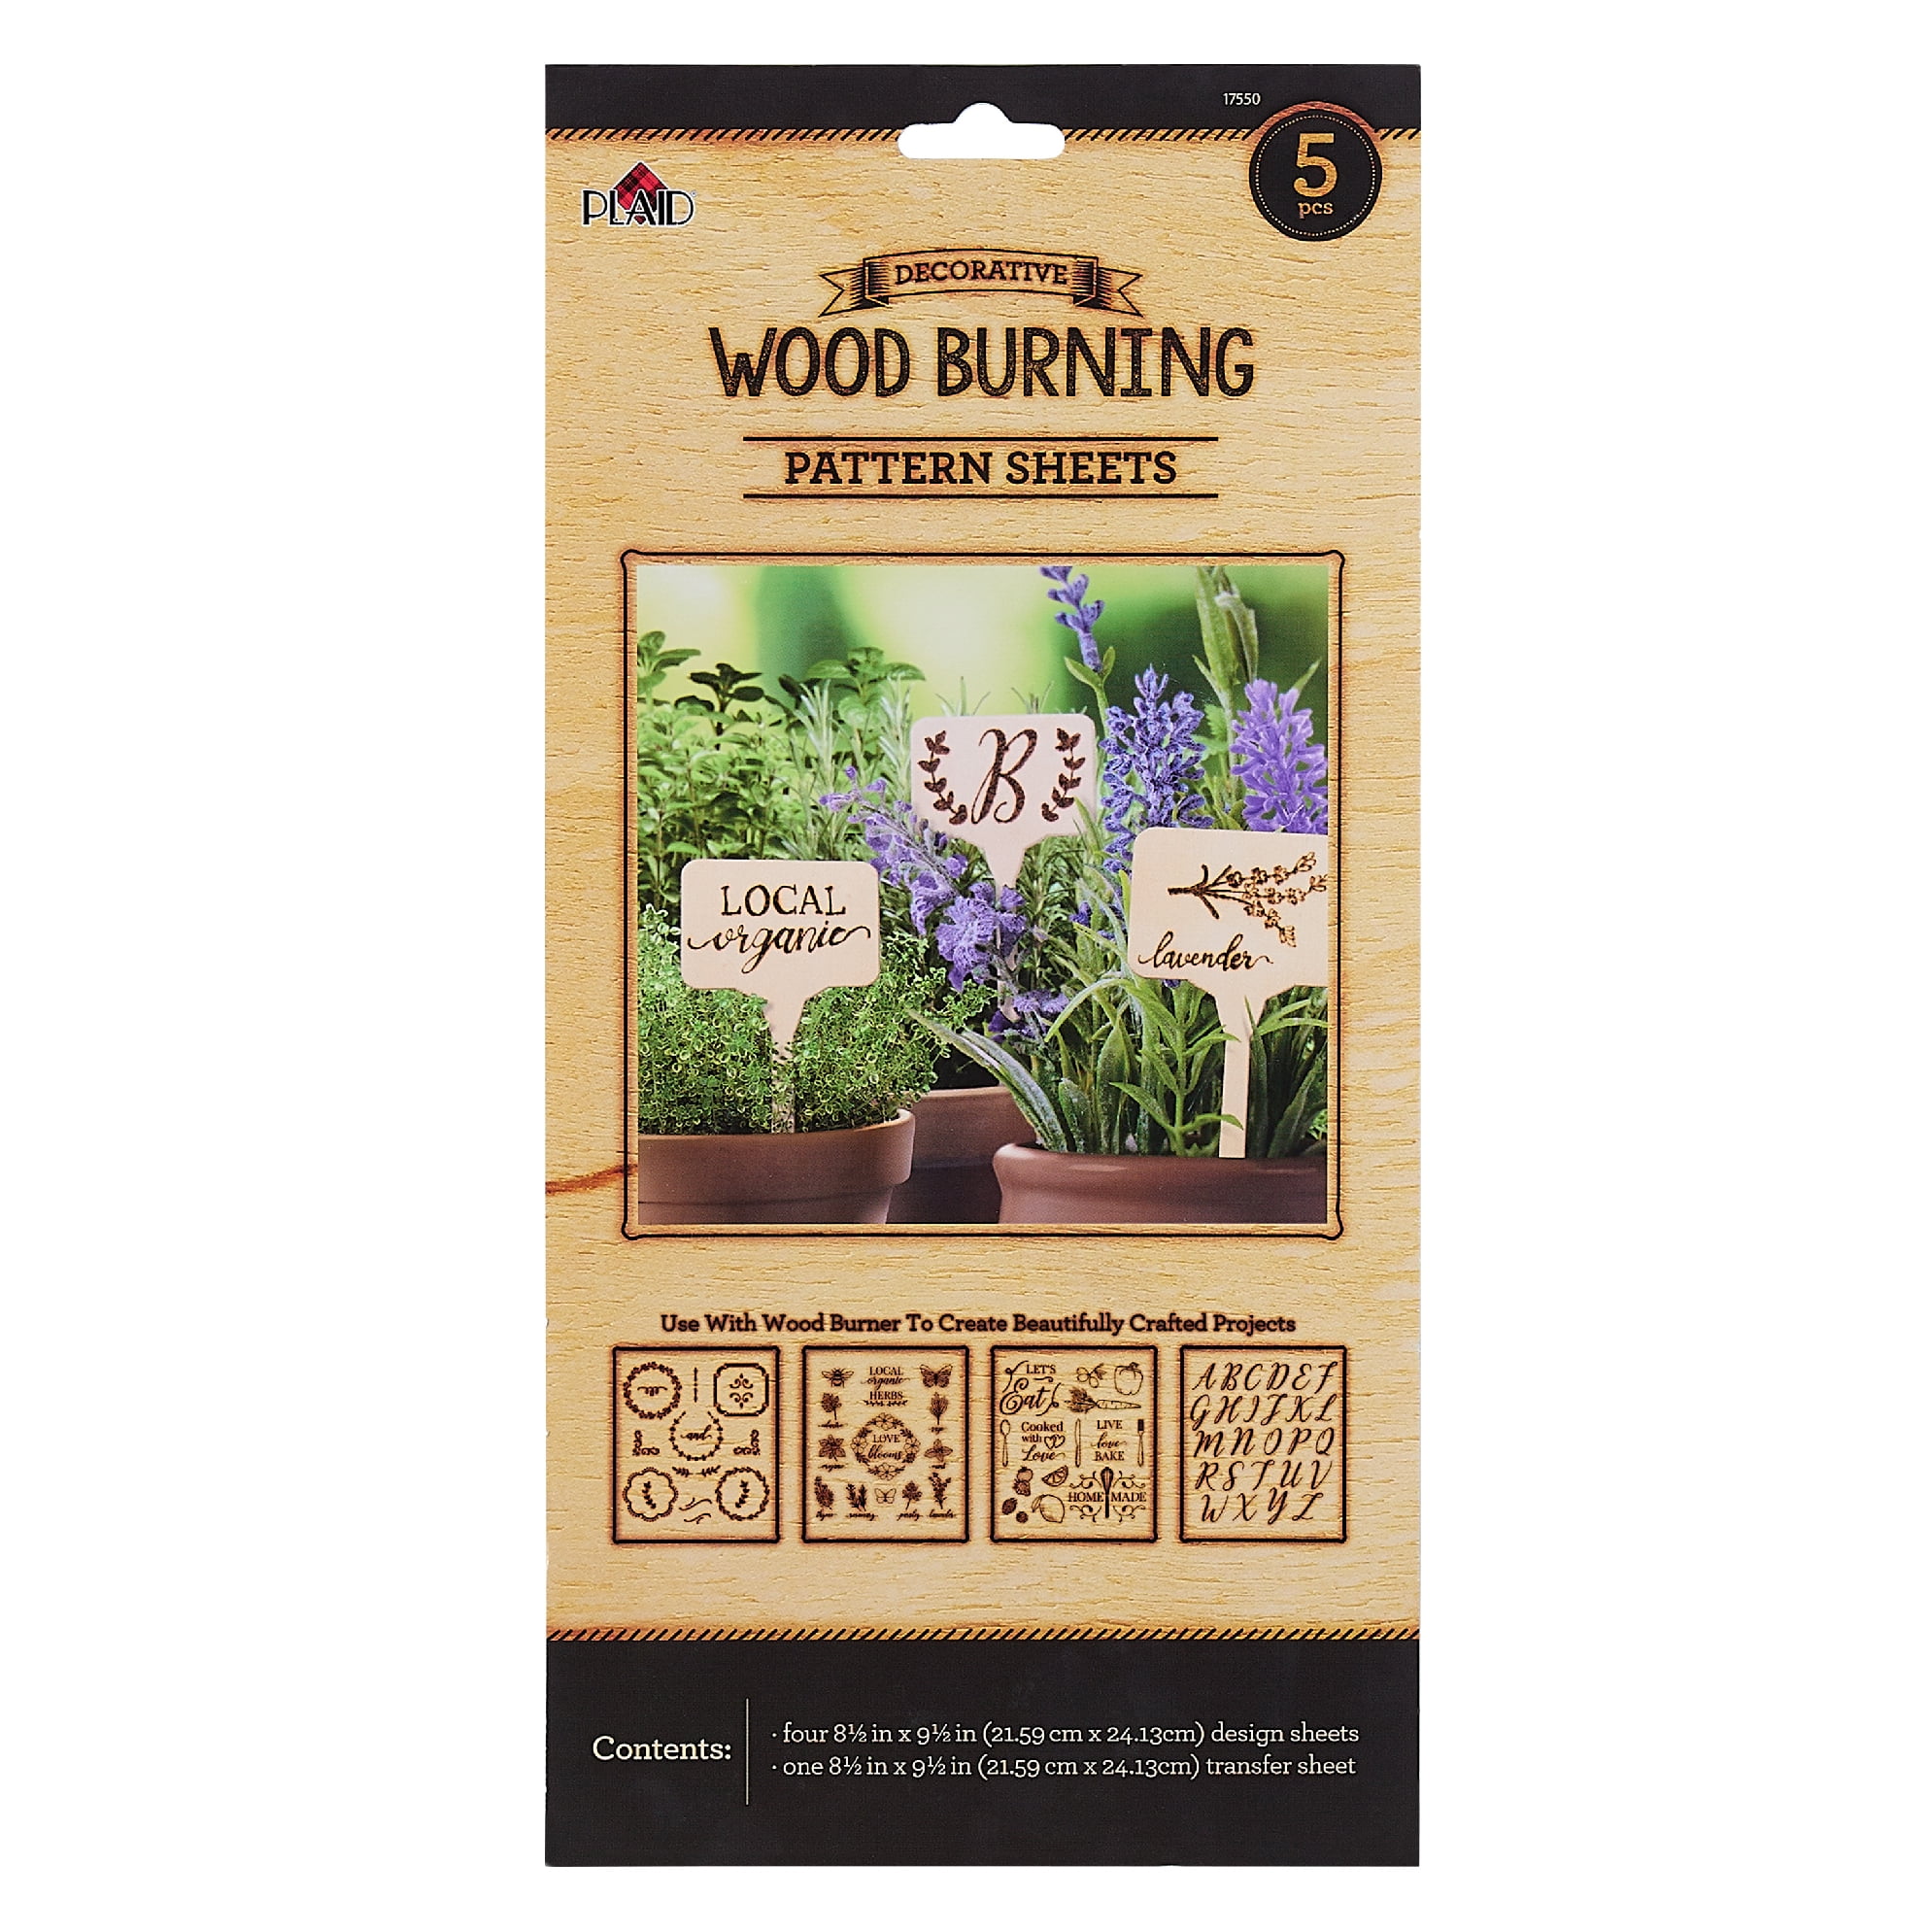 plaid wood burning kit from walmart｜TikTok Search